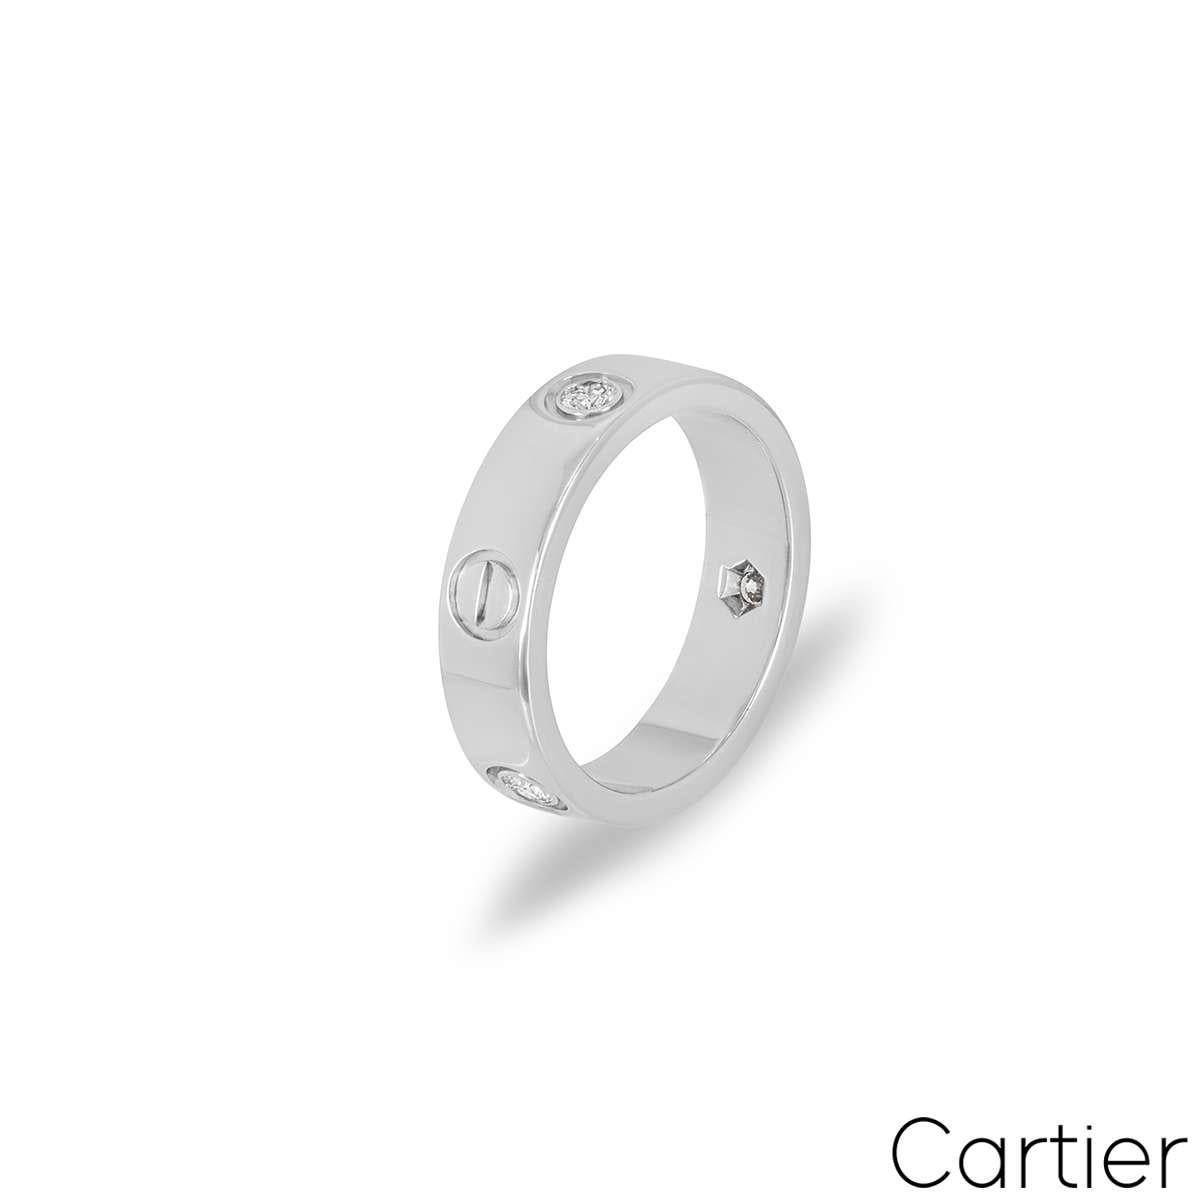 Ein signierter Ring aus 18 Karat Weißgold aus der Collection'S Love von Cartier. Er ist mit 3 runden Diamanten im Brillantschliff von insgesamt 0,22 ct besetzt, die sich zwischen den kultigen Cartier-Schraubenmotiven abwechseln. Der 5,5 mm breite